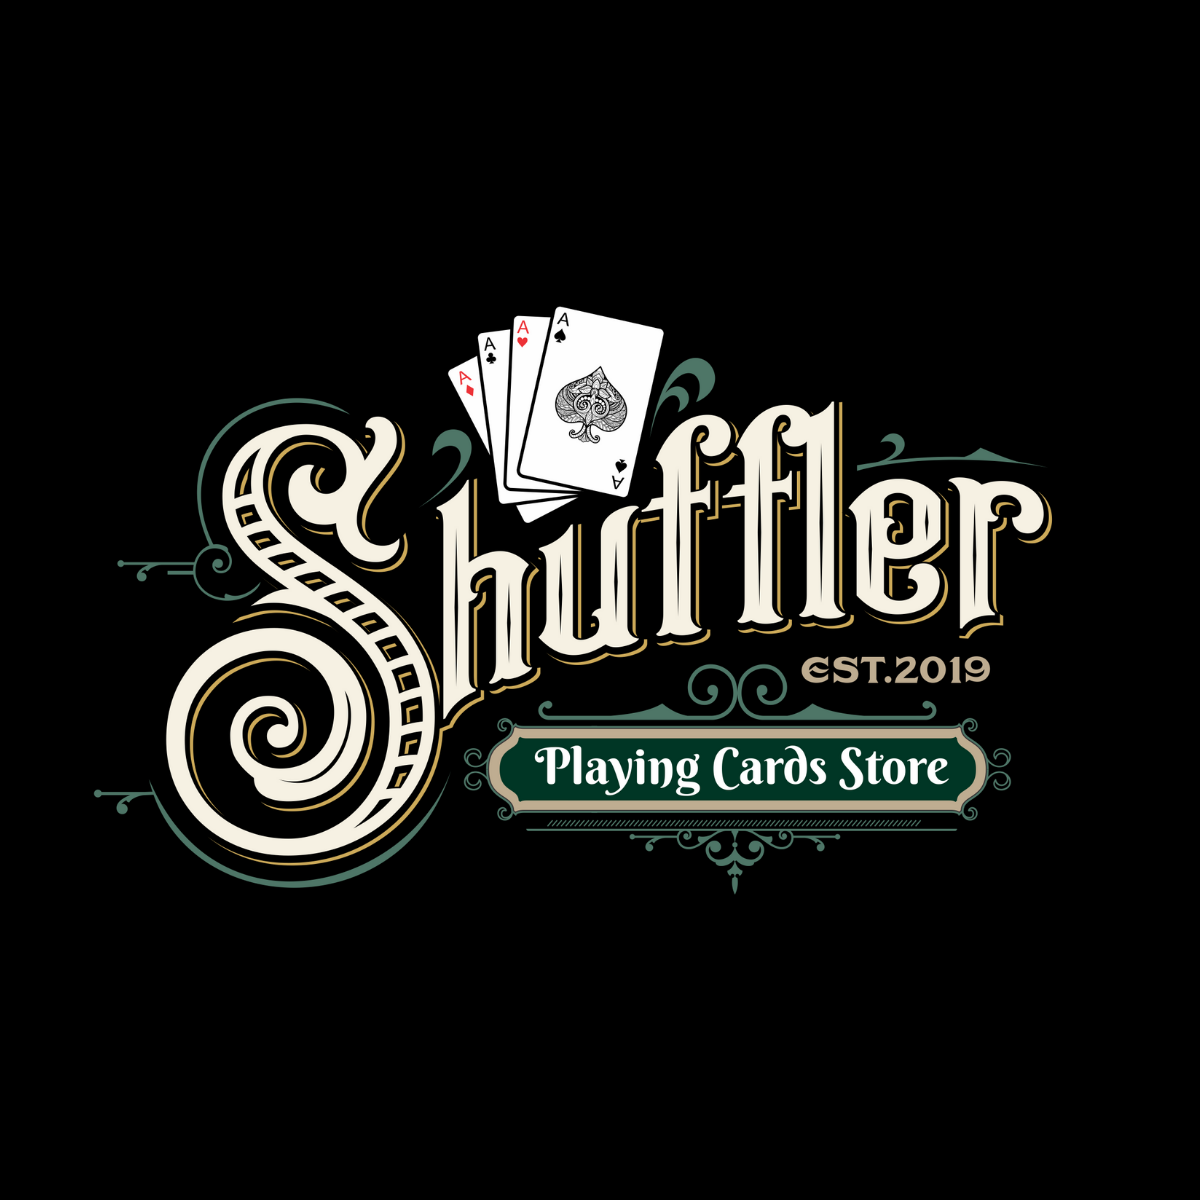 Shuffler